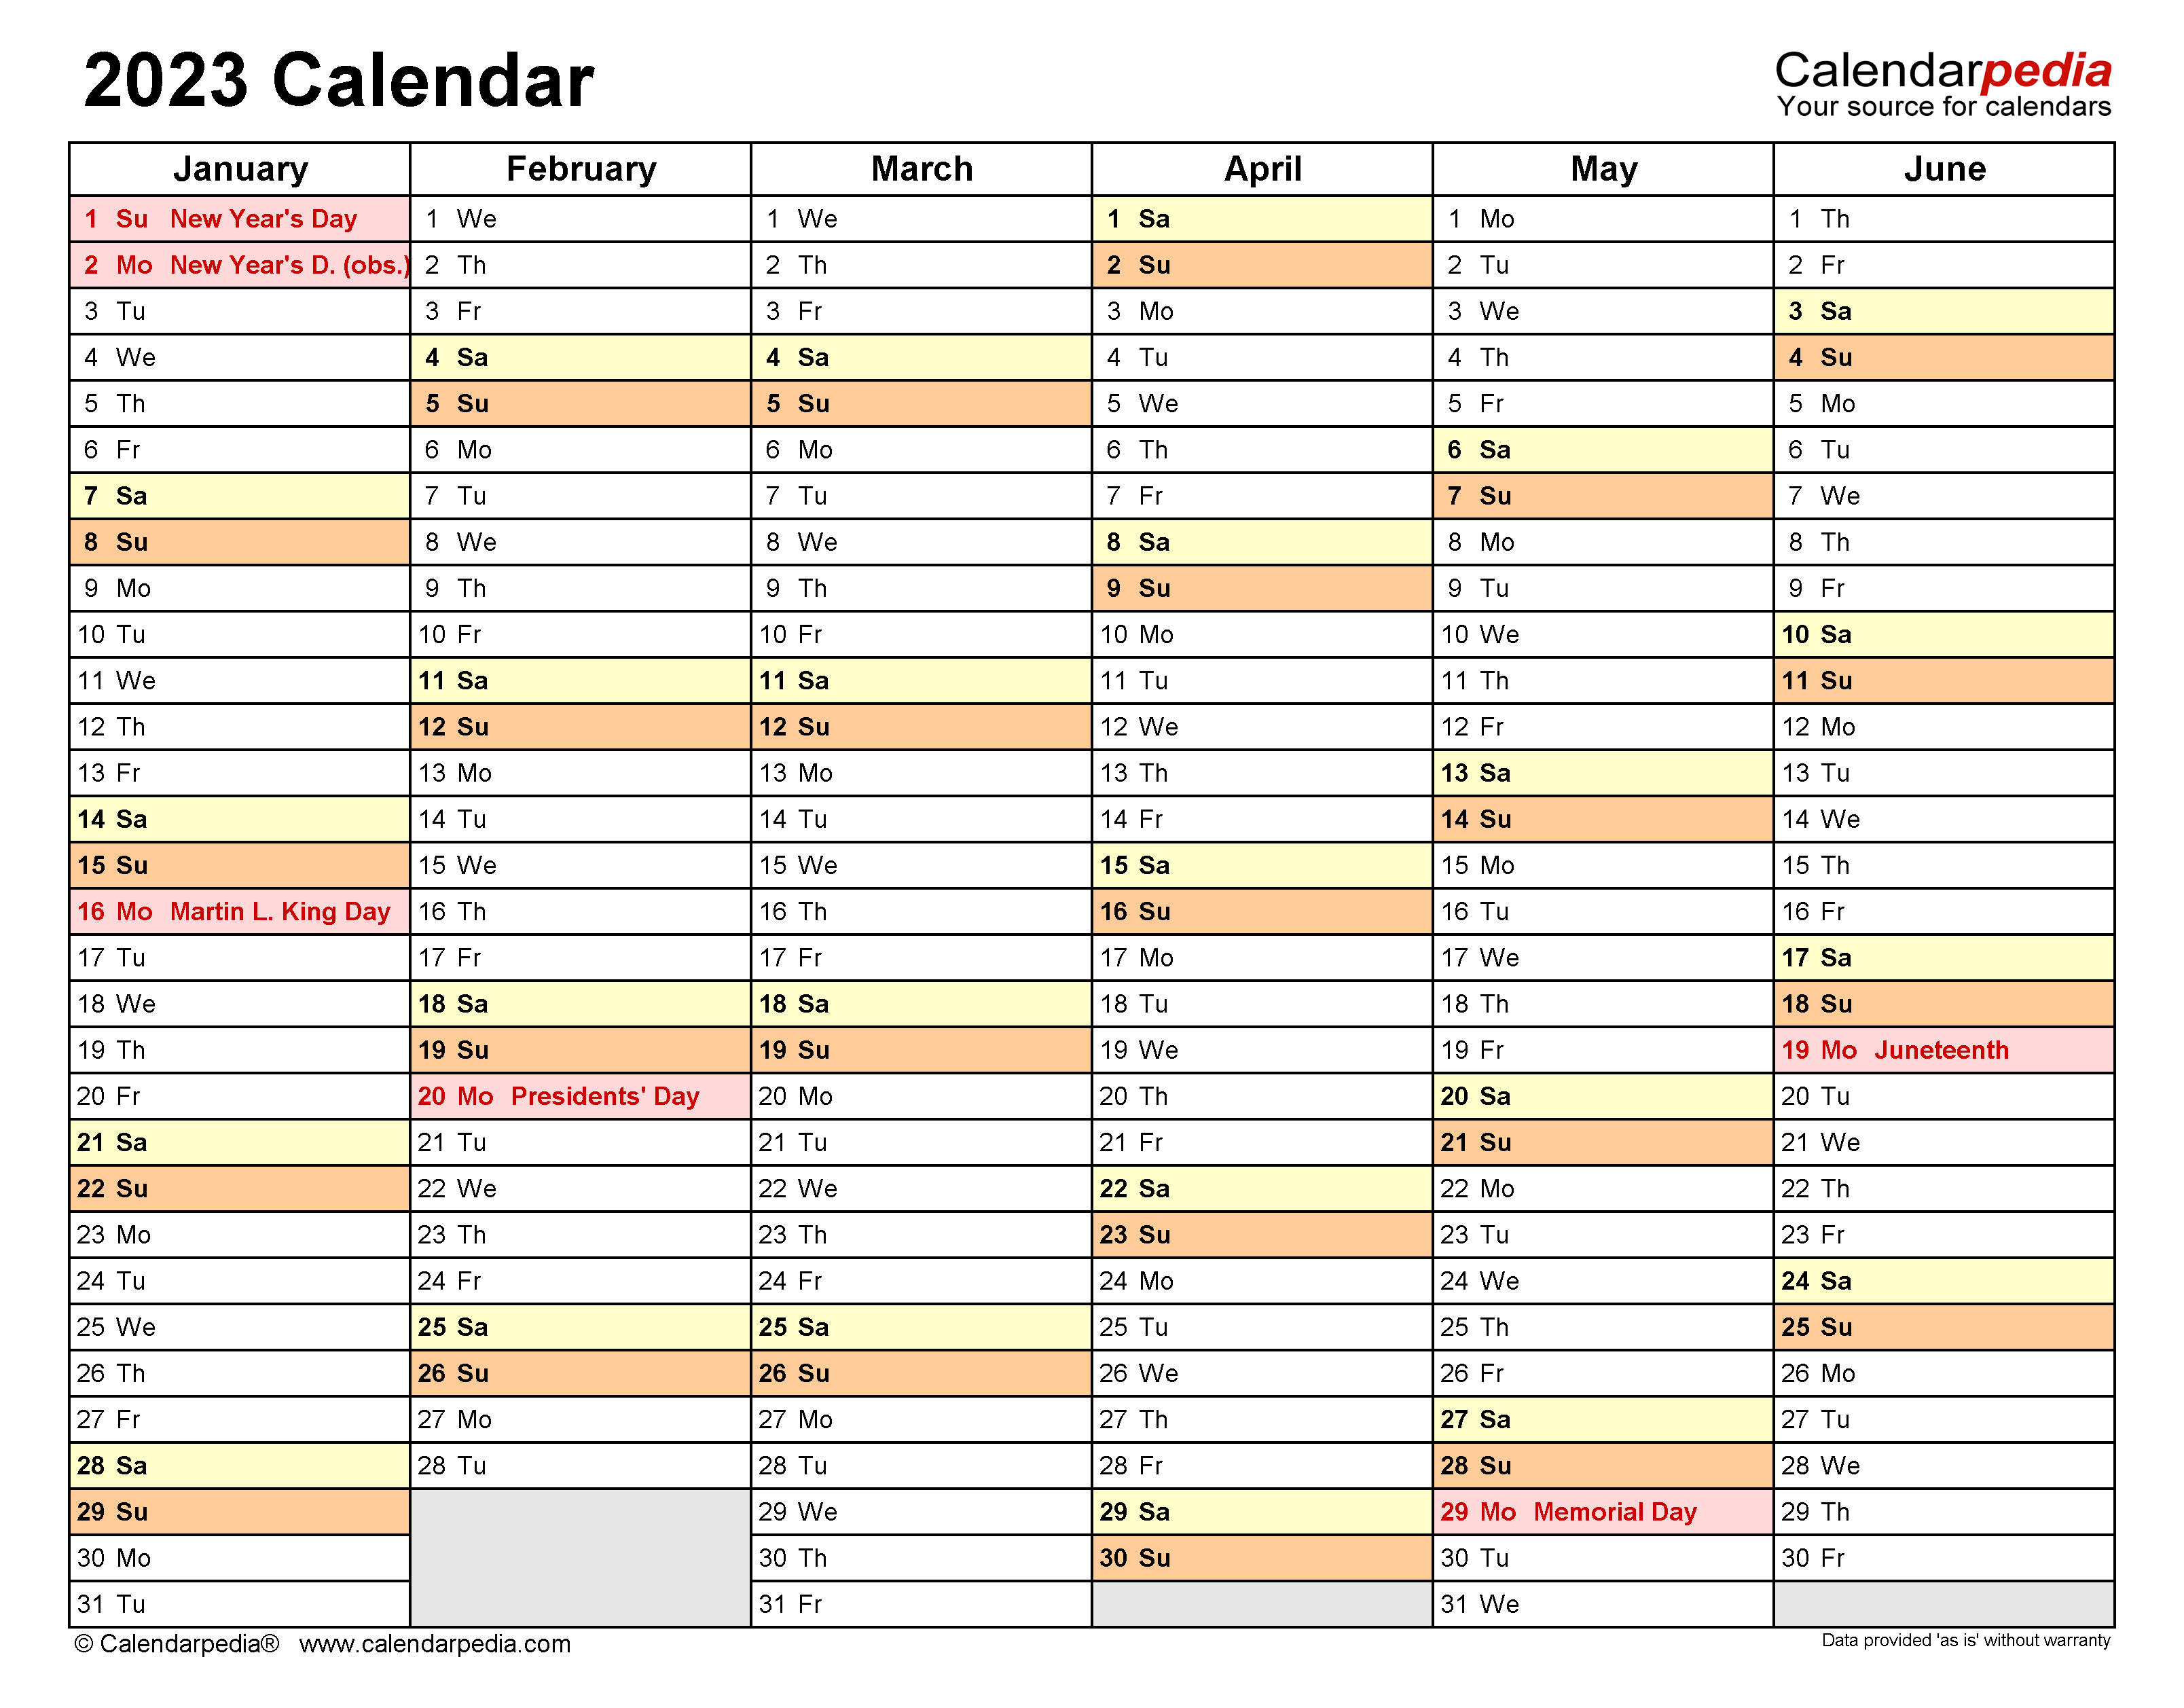 2023 Calendar Free Printable Microsoft Excel Templates - Ariaja.com